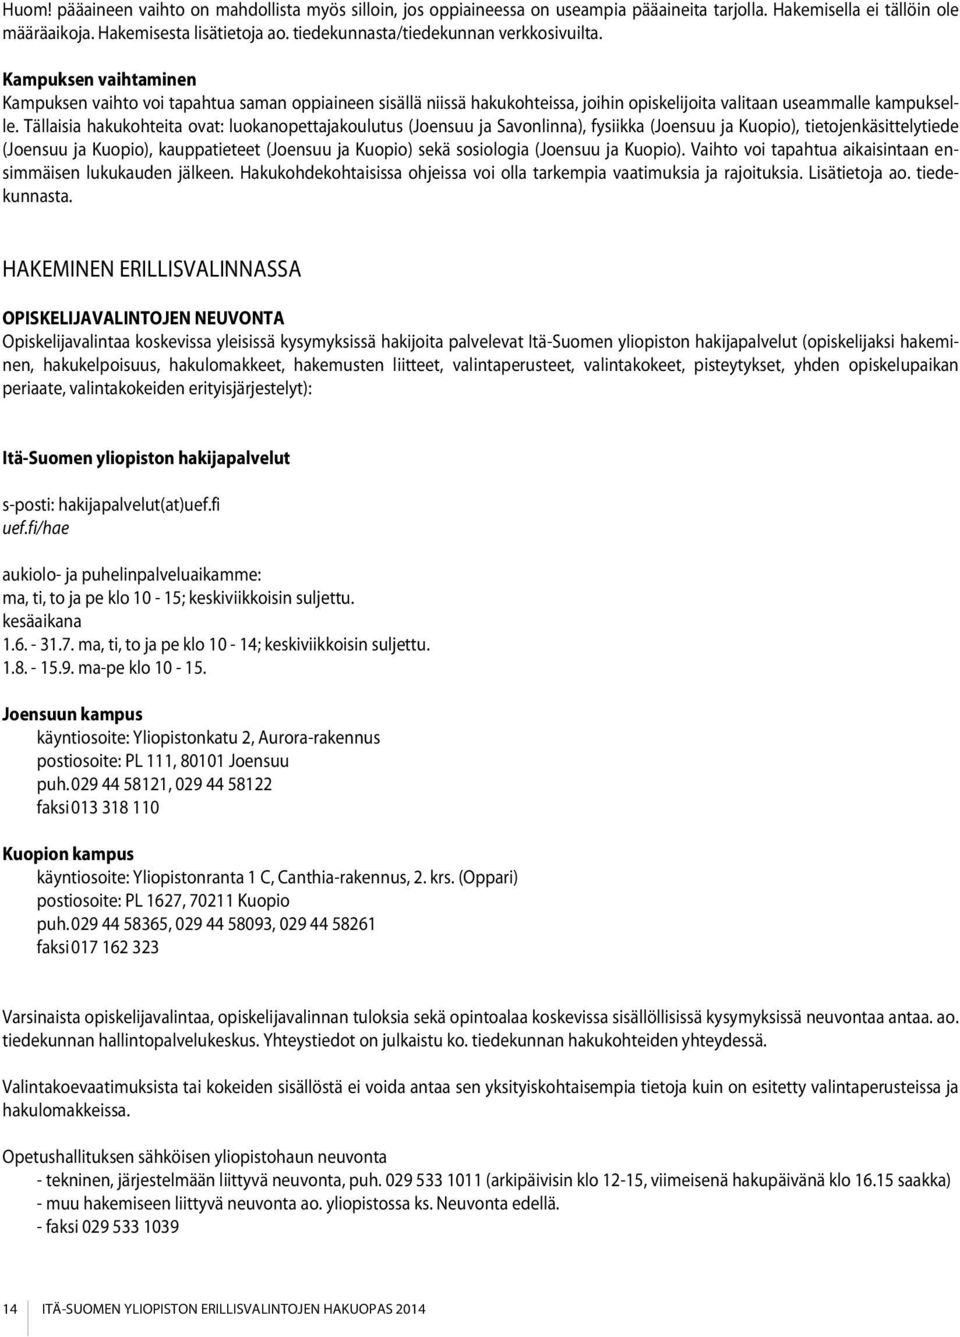 Tällaisia hakukohteita ovat: luokanopettajakoulutus (Joensuu ja Savonlinna), fysiikka (Joensuu ja Kuopio), tietojenkäsittelytiede (Joensuu ja Kuopio), kauppatieteet (Joensuu ja Kuopio) sekä